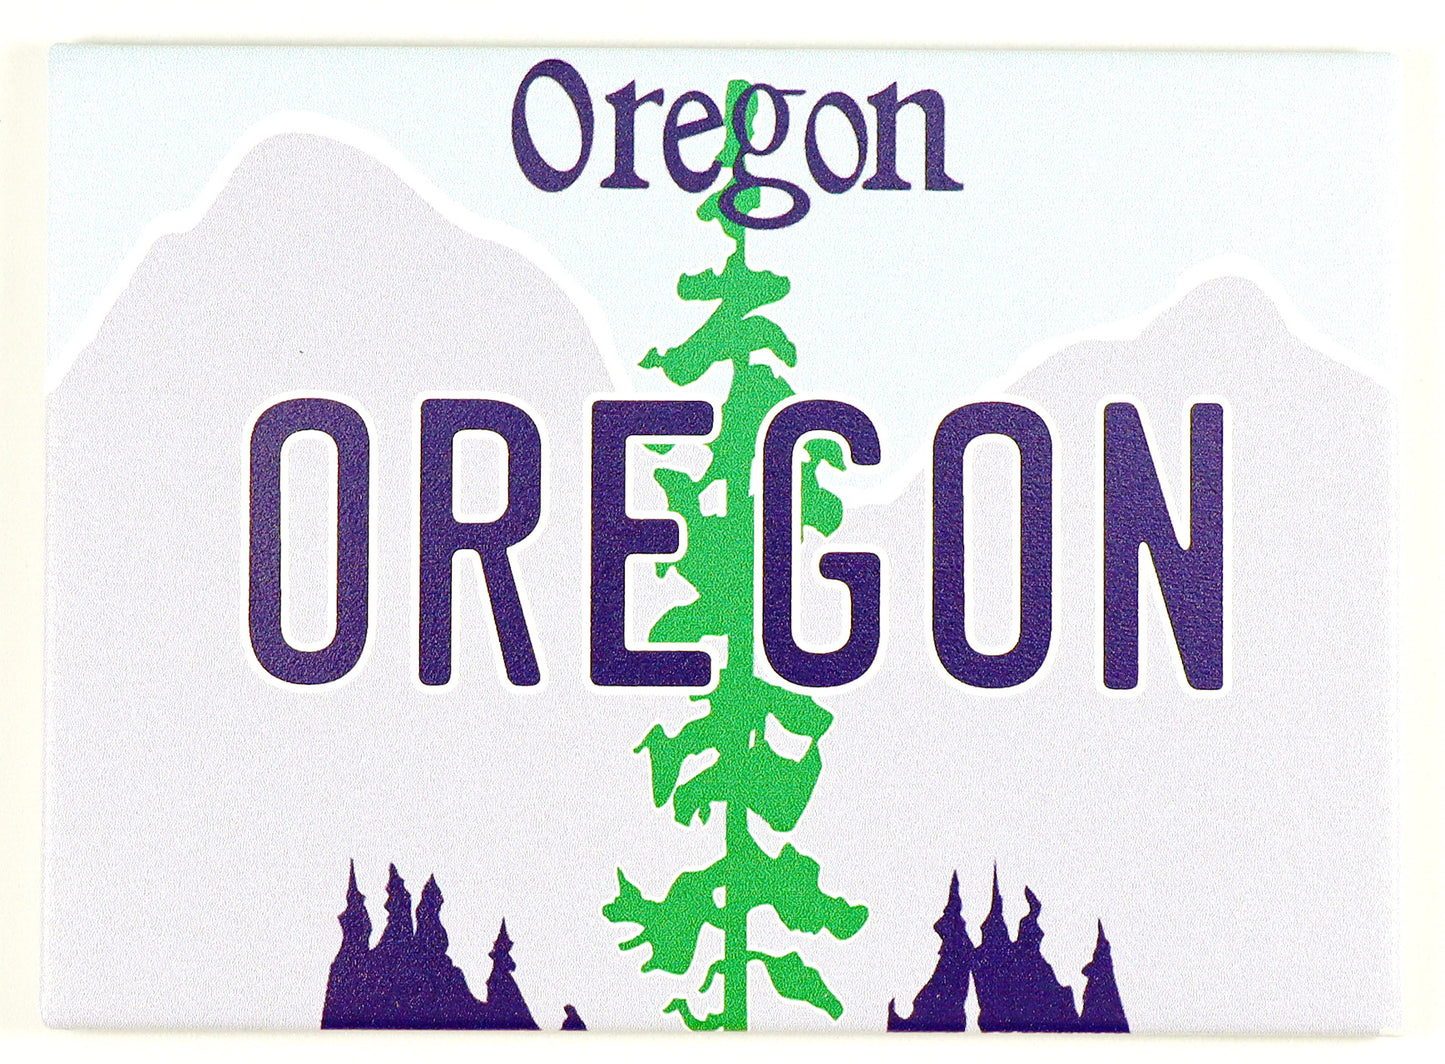 Oregon License Plate Fridge Collector's Souvenir Magnet 2.5" X 3.5"